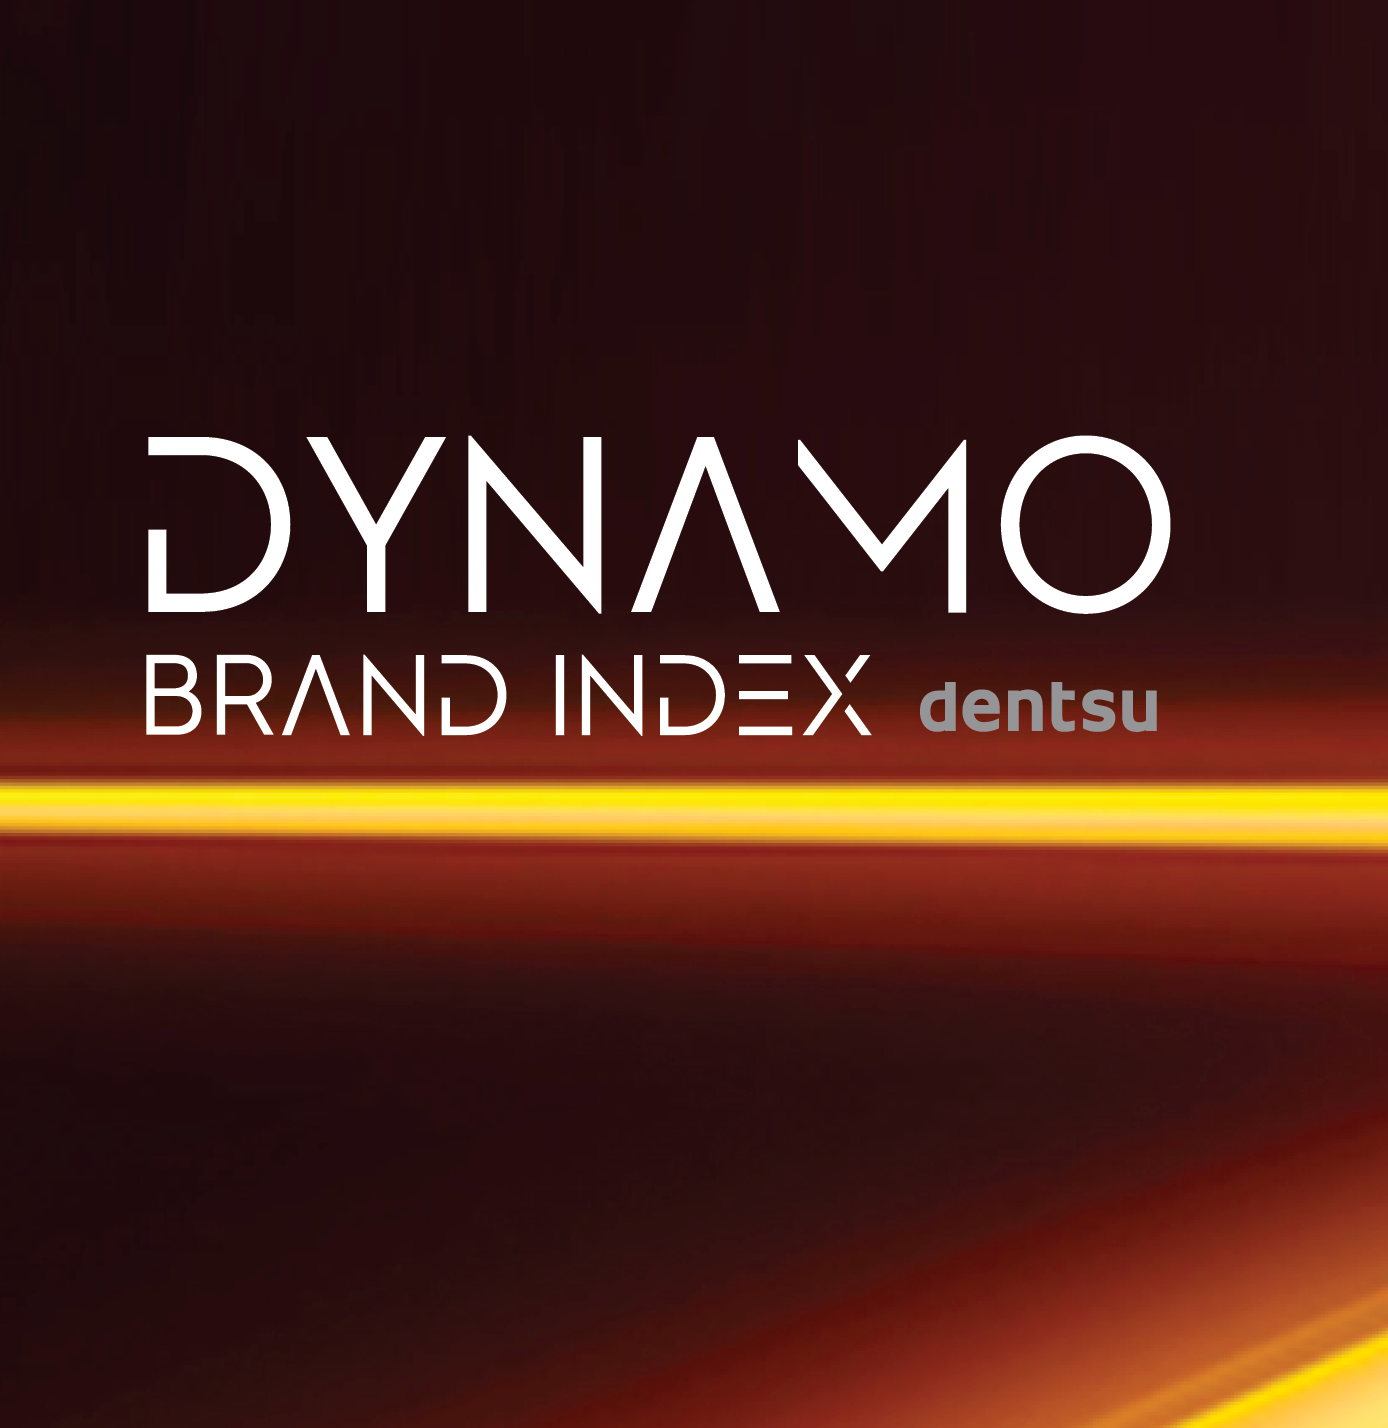 Hva definerer merkene som alle snakker om og hva har de som ikke andre merker har? Dette kan du lese om i Dynamo Brand Index 2019.